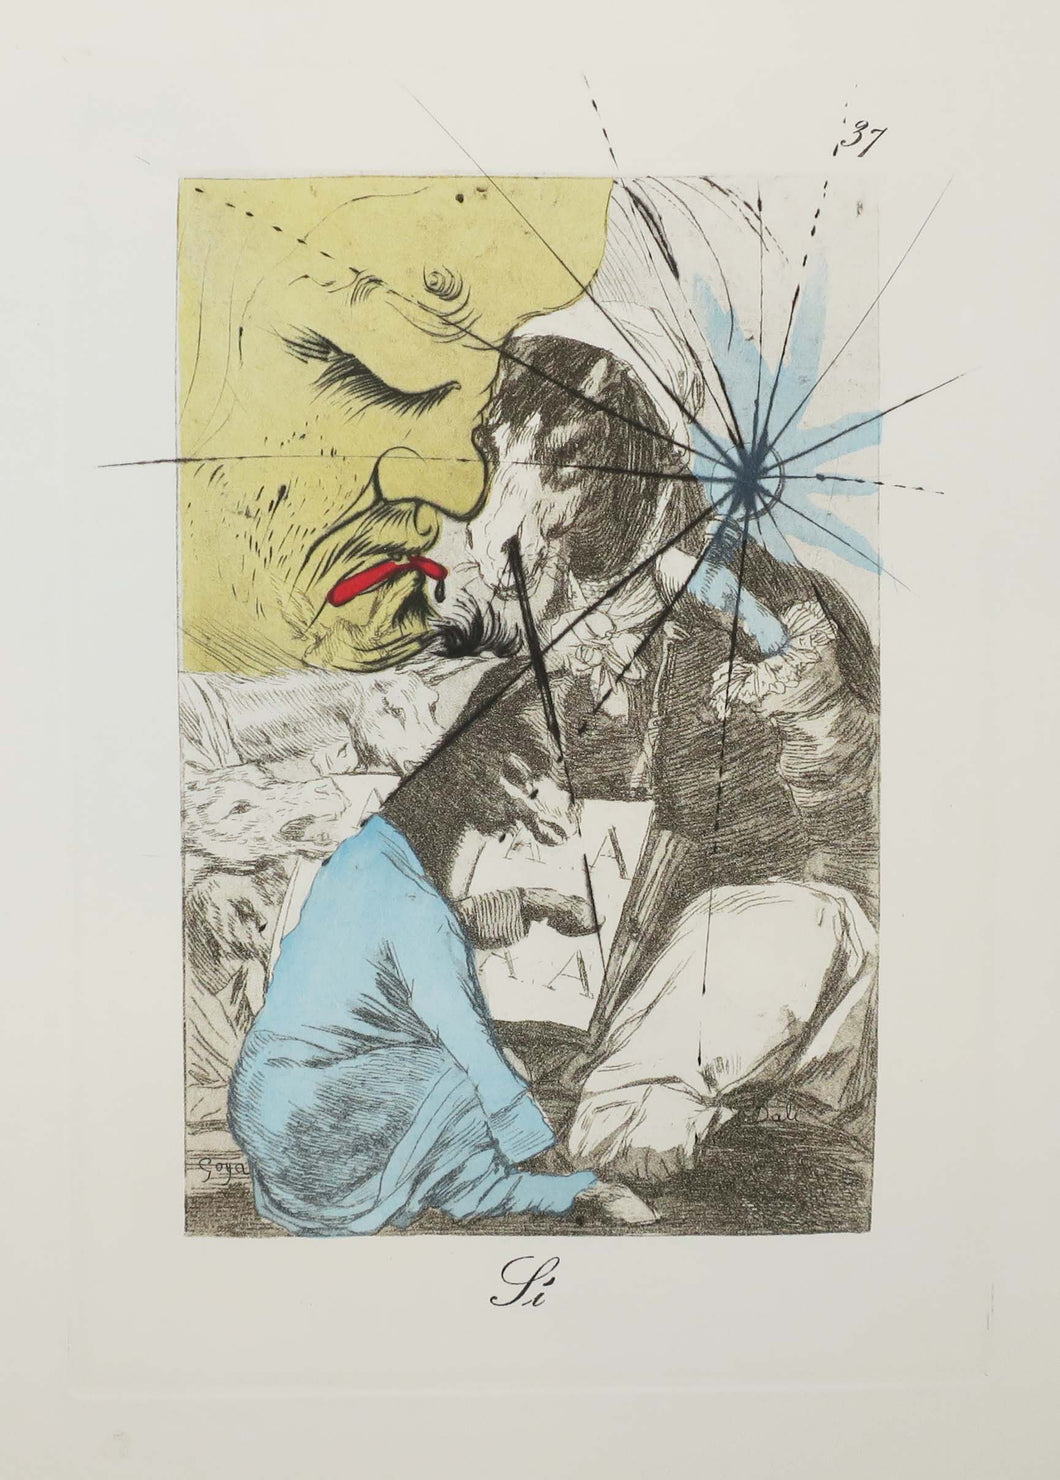 Si. Les Caprices de Goya de Dali. 1977.